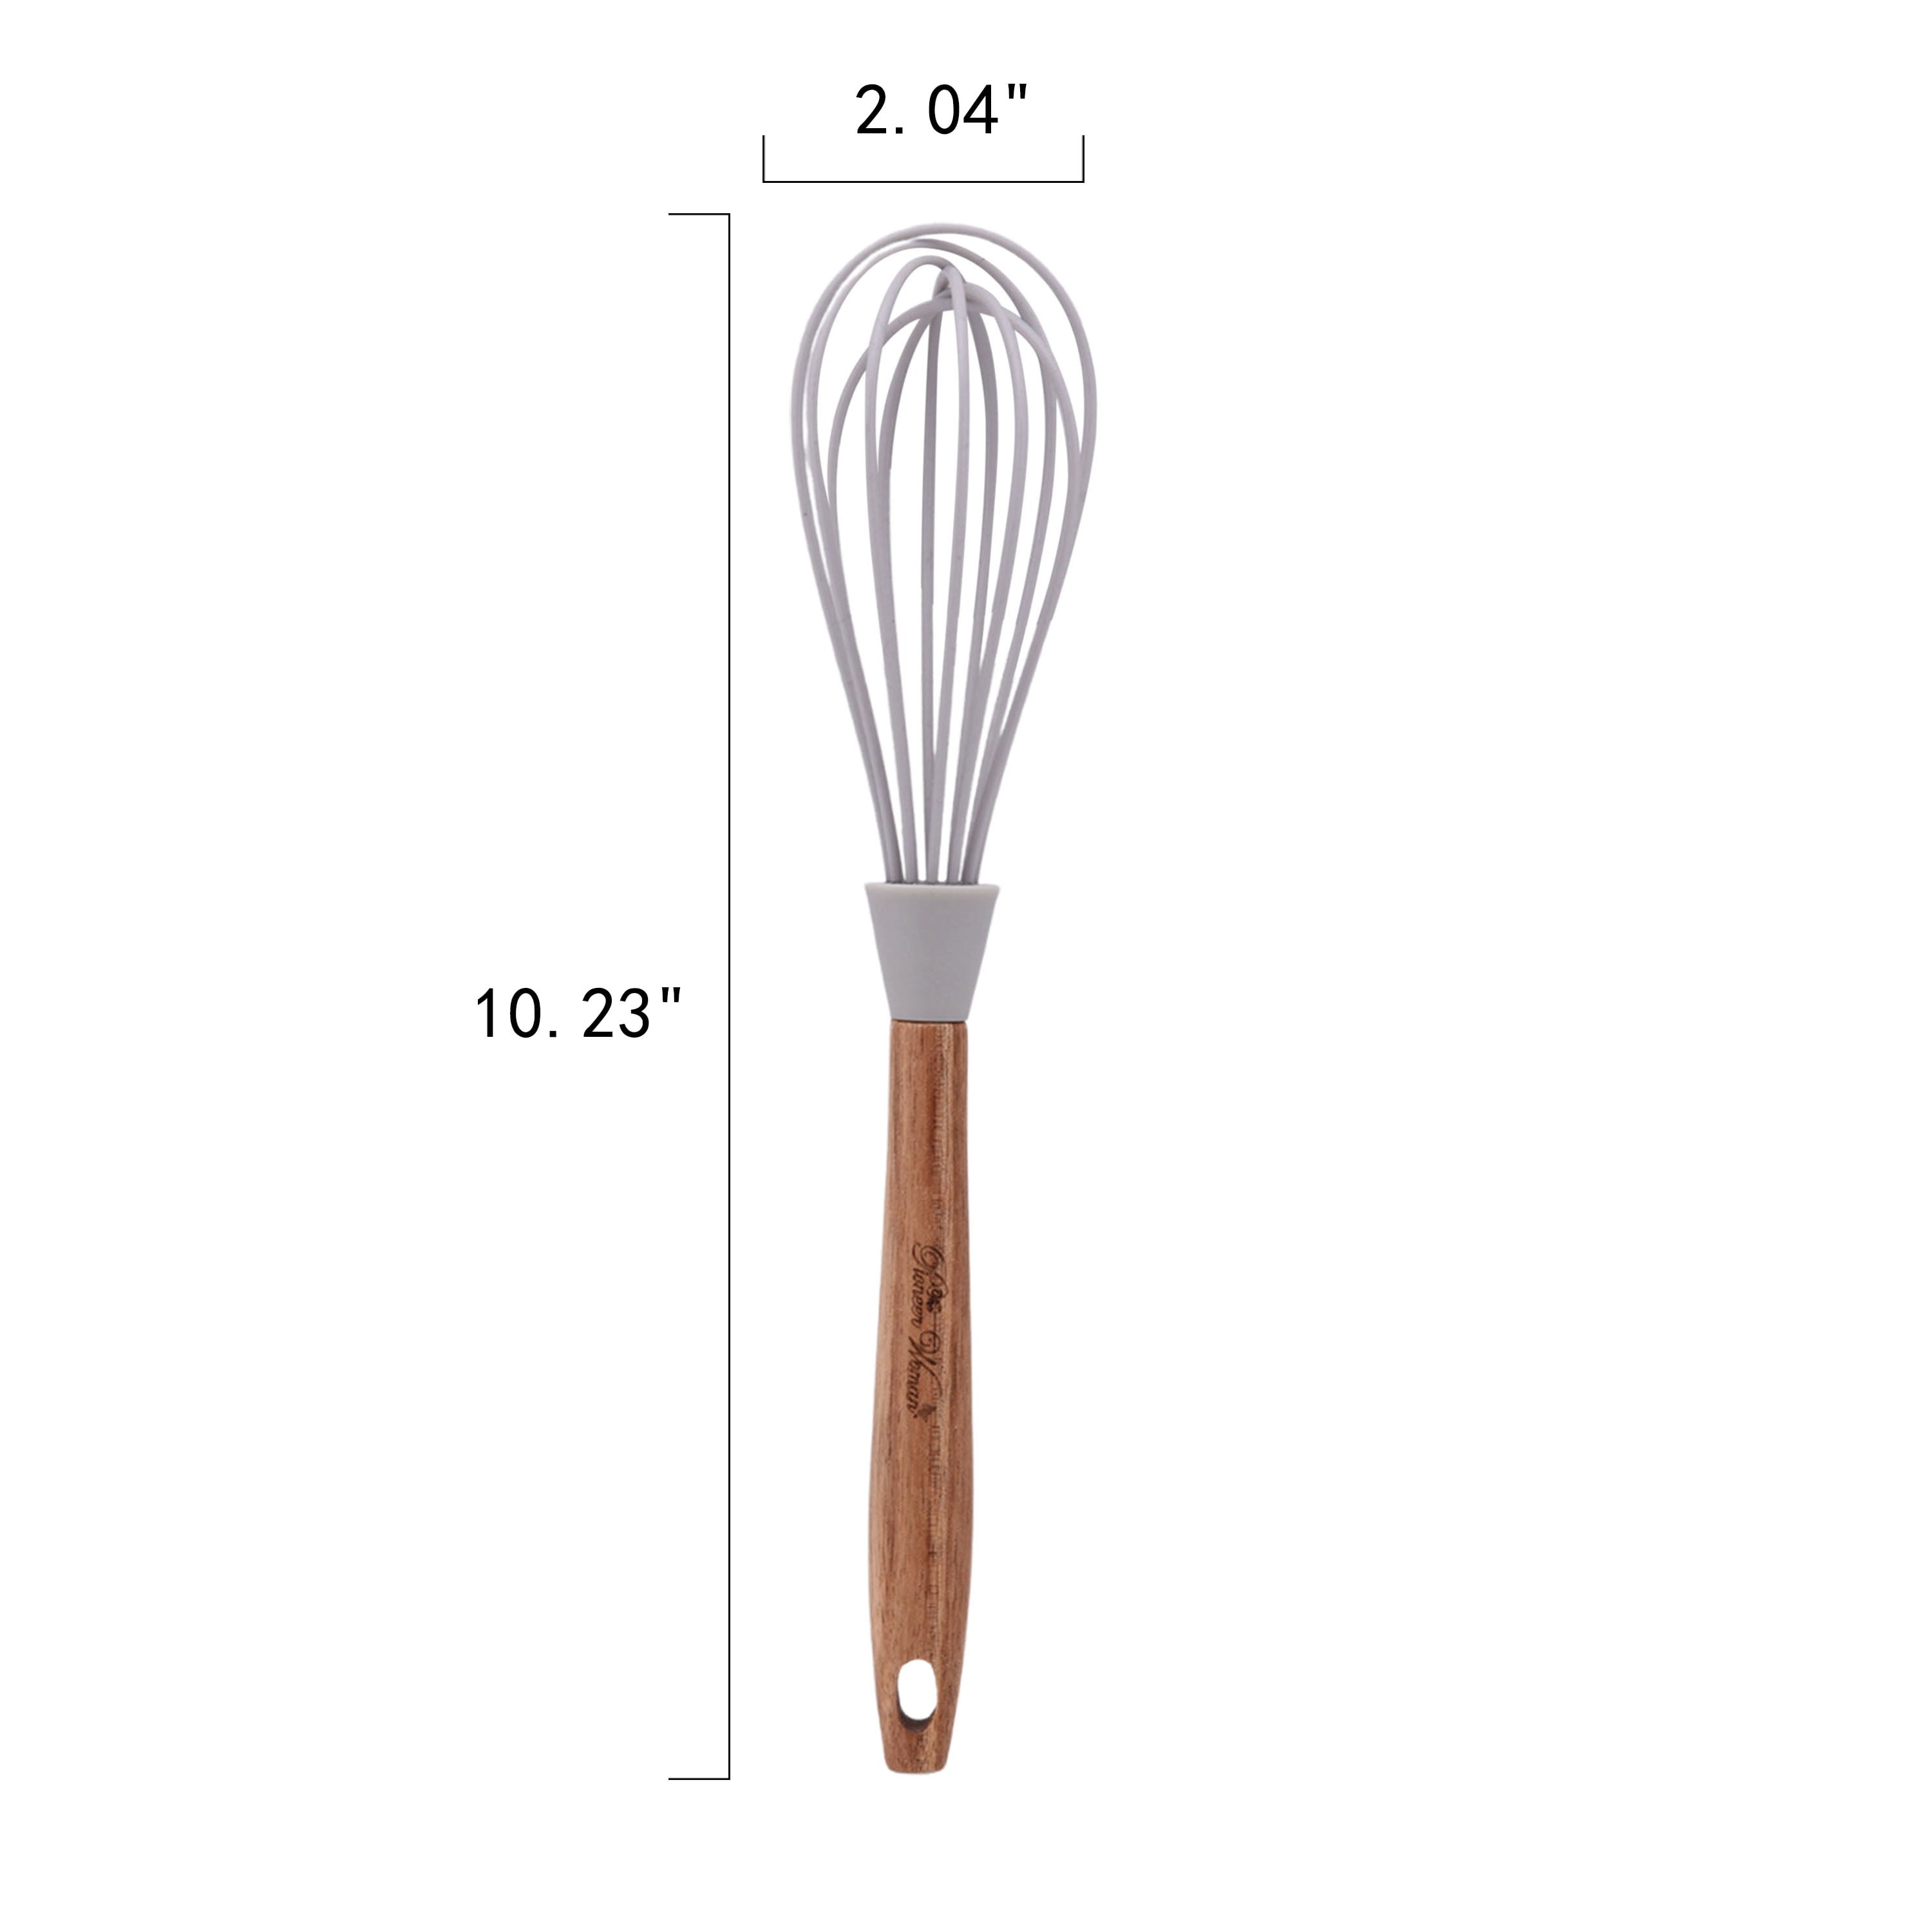 Pioneer woman kitchen utensils - Cooking Utensils - Berea, Kentucky, Facebook Marketplace